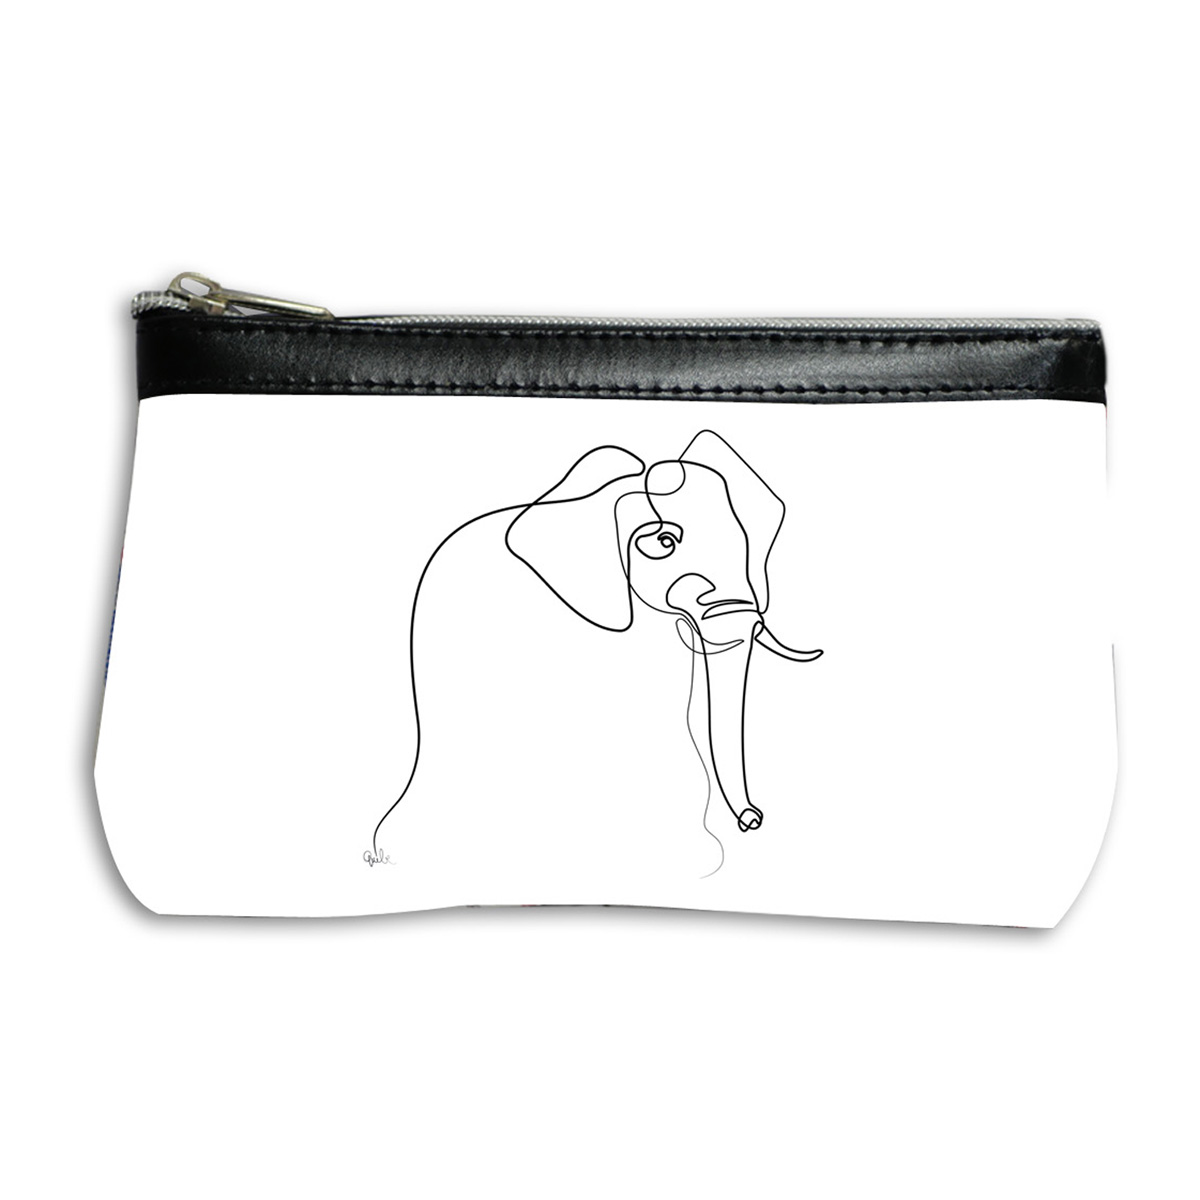 Pochette trousse artisanale \'Quibe\' blanc noir (Elephant) - 17x12 cm - [A0326]